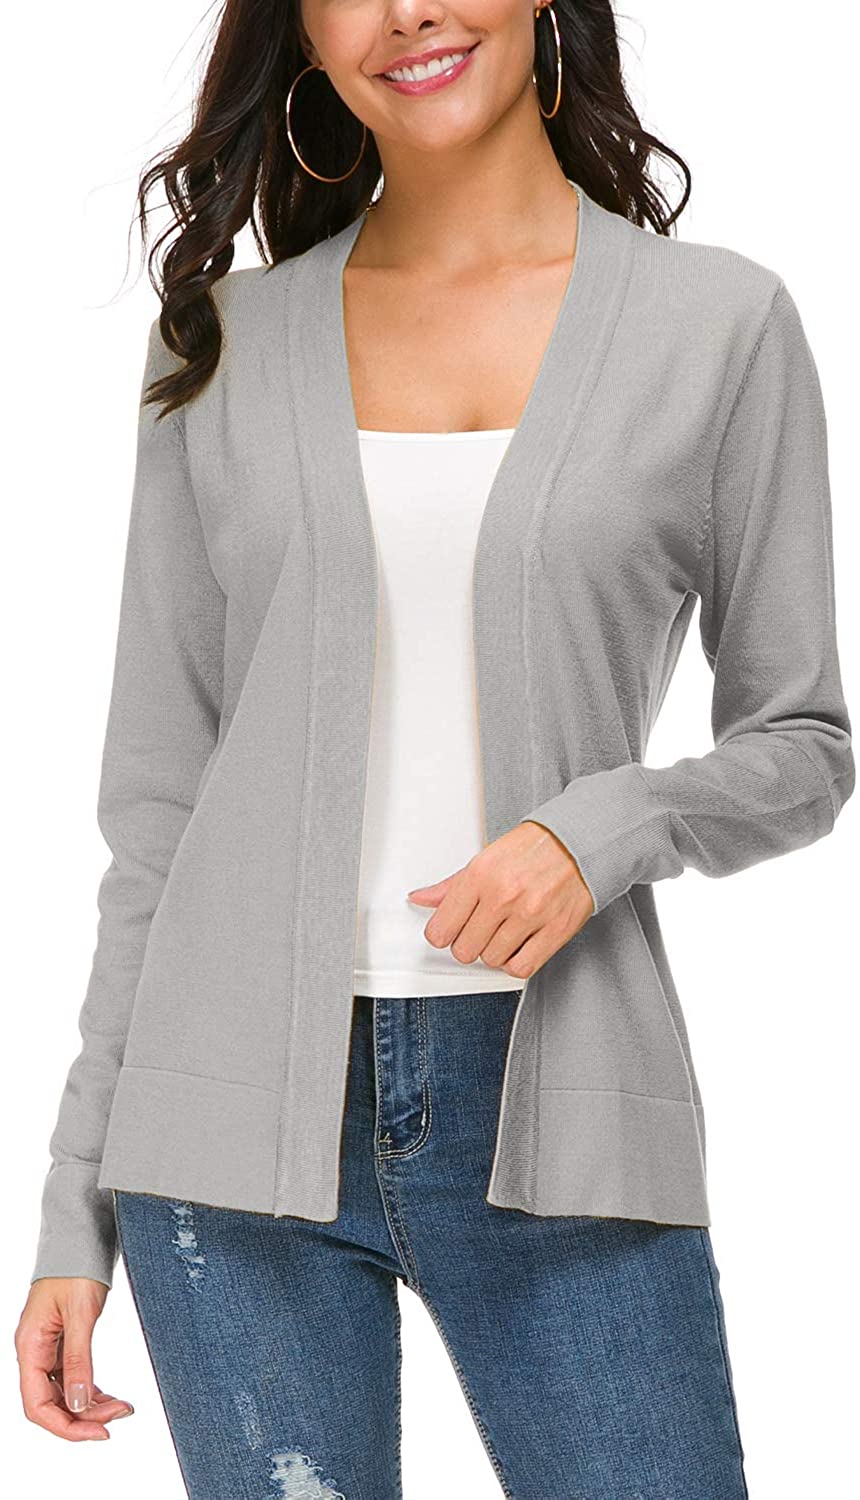 Urban CoCo Women's Long Sleeve Open Front Knit Cardigan Sweater | eBay